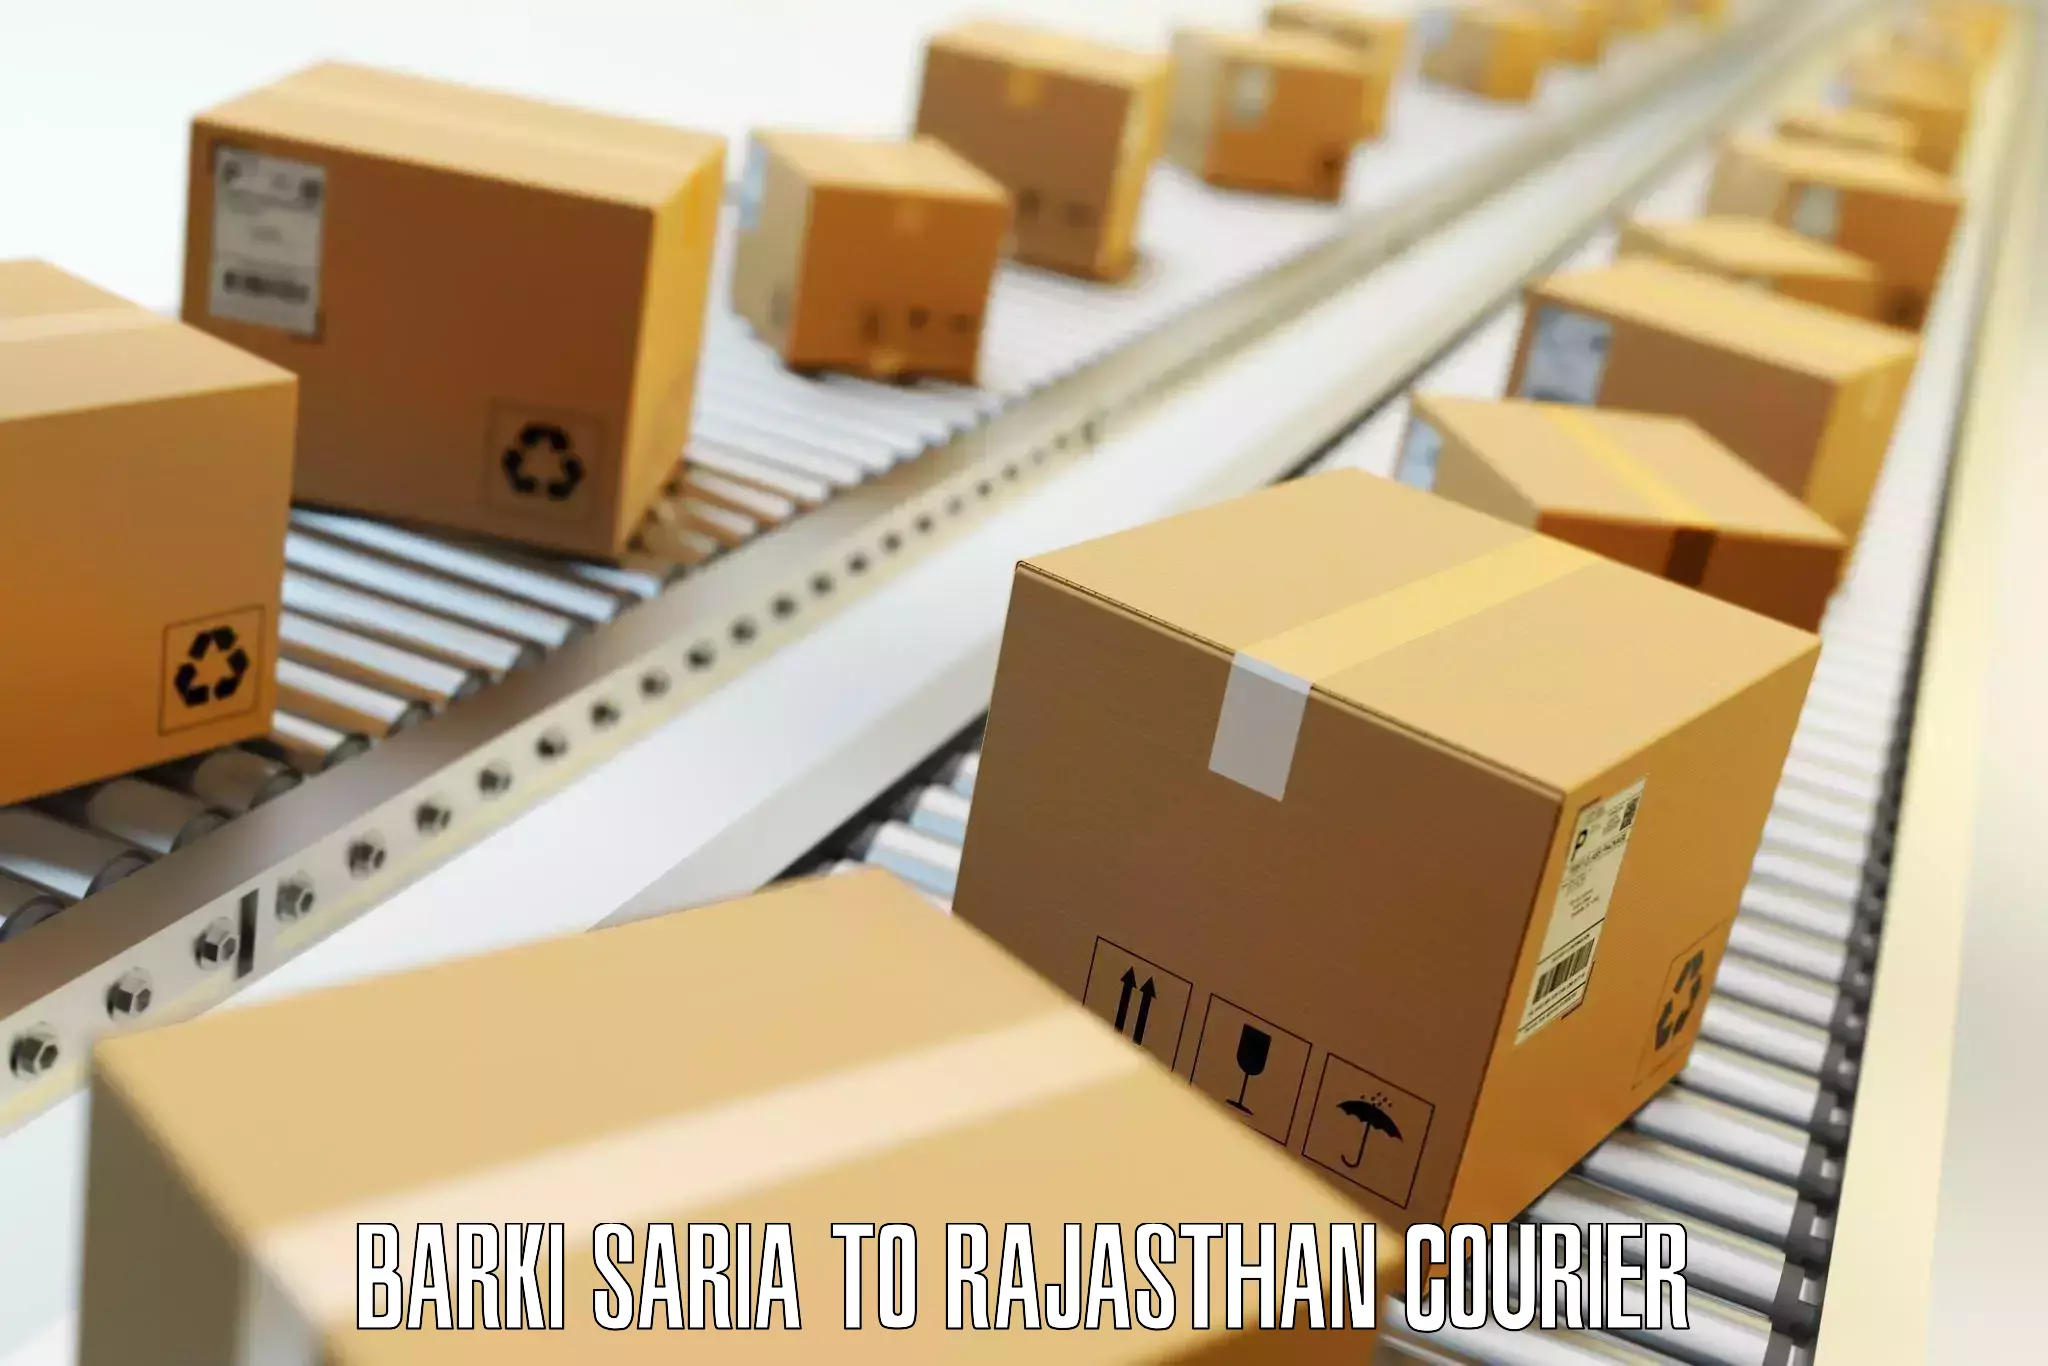 Global baggage shipping Barki Saria to Kushalgarh